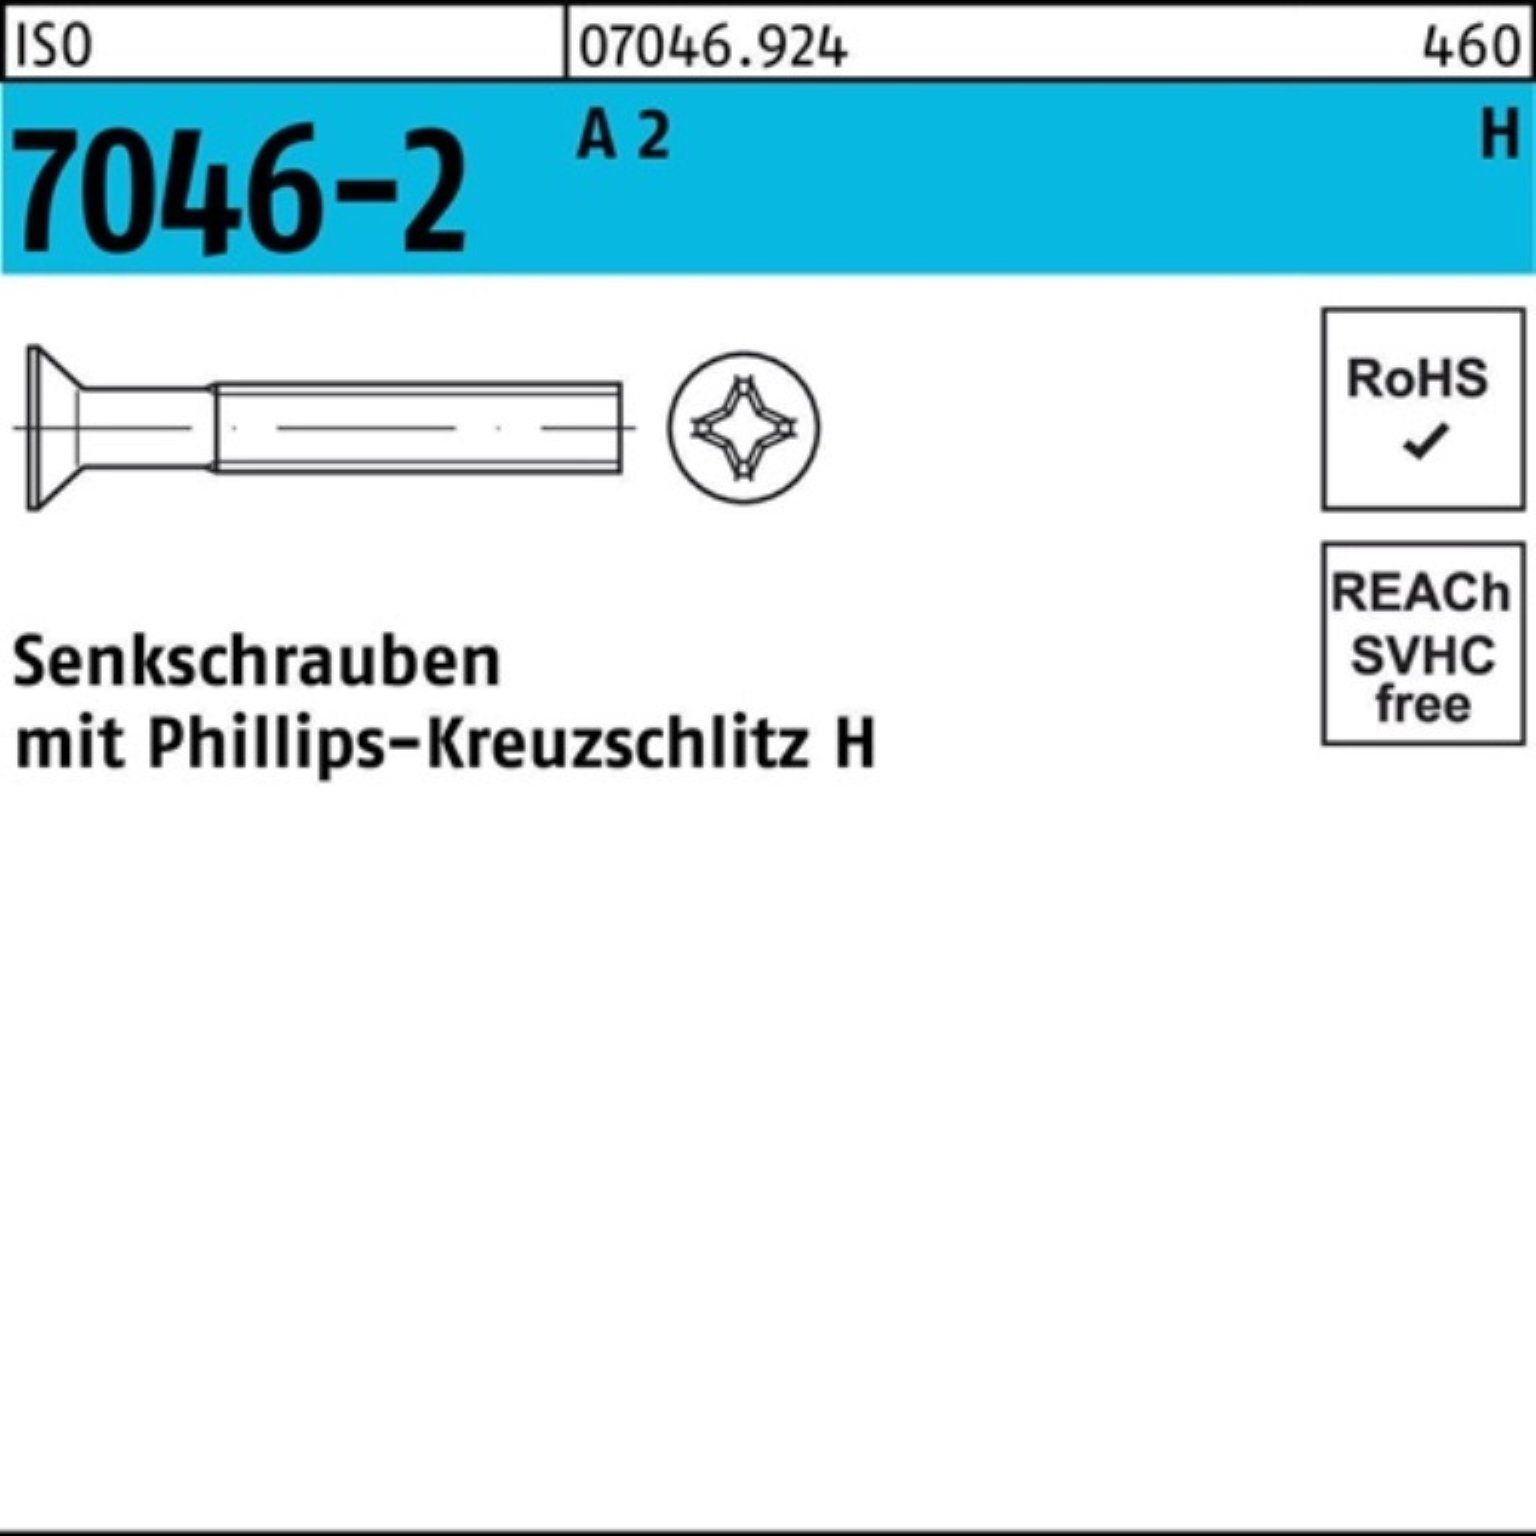 2 100 Senkschraube PH ISO 100er ISO Senkschraube Reyher A 45-H Stück 7046-2 M10x Pack 704